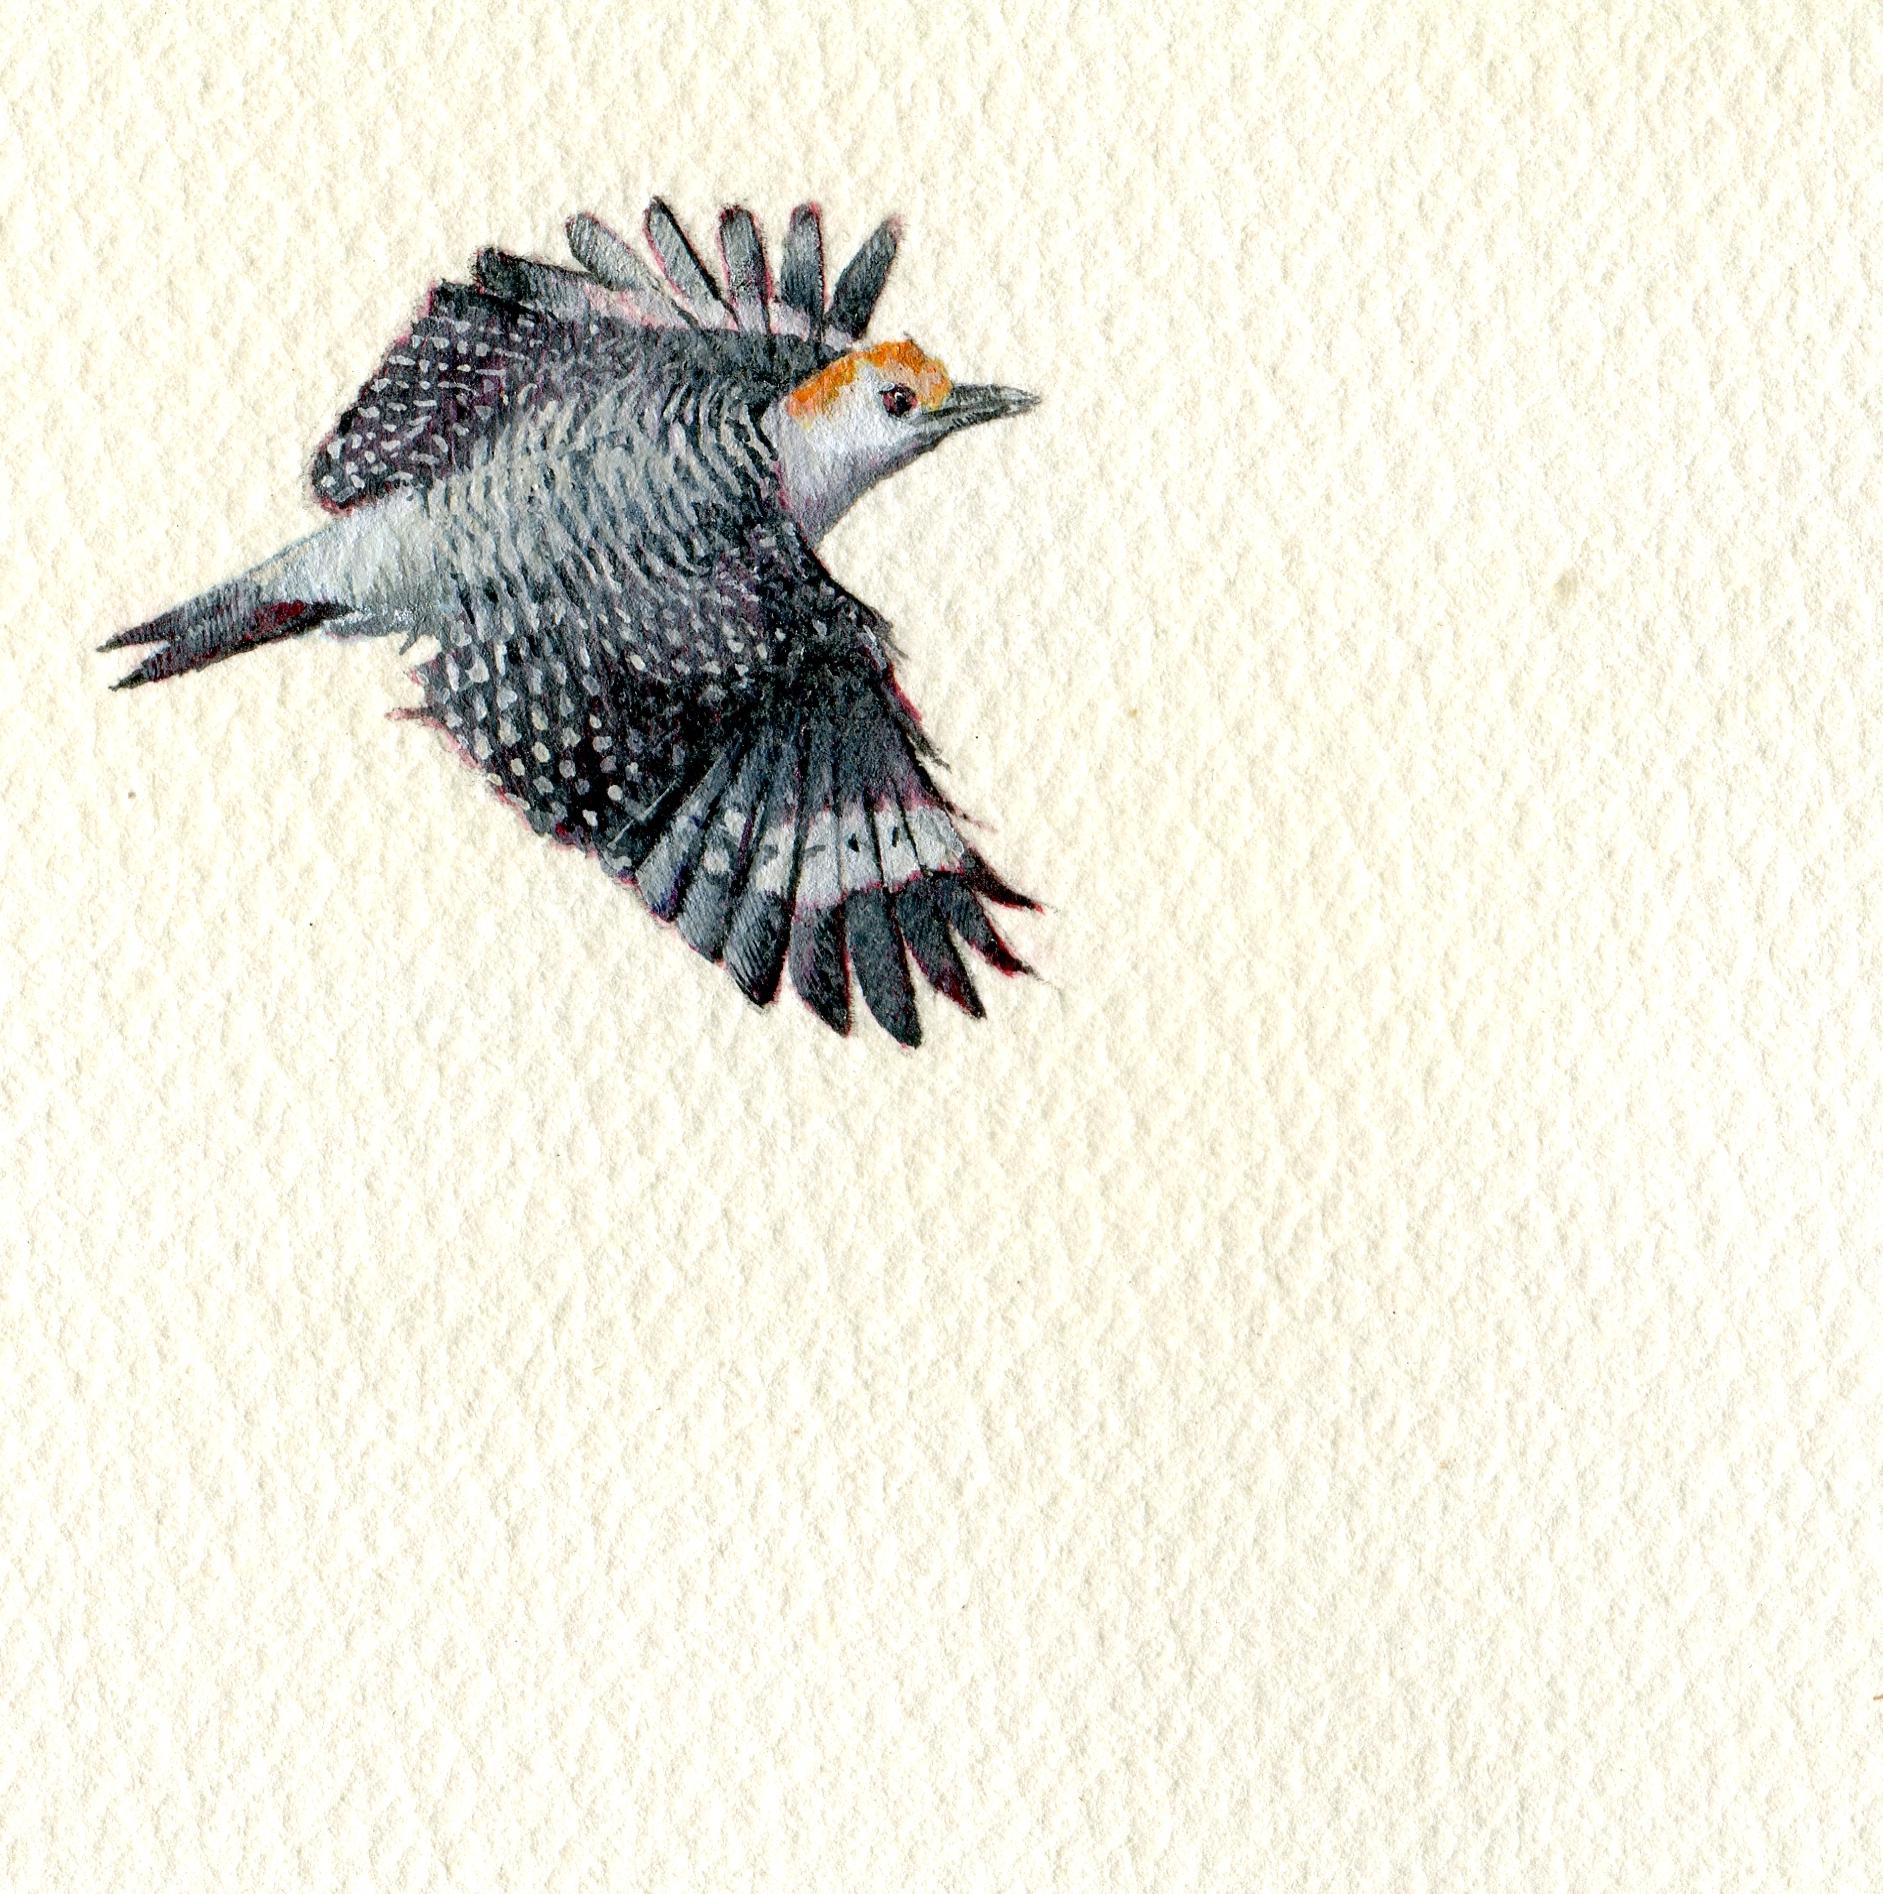 Woodpecker, portrait miniature d'oiseau réaliste à la gouache sur papier avec façade dorée, 2020